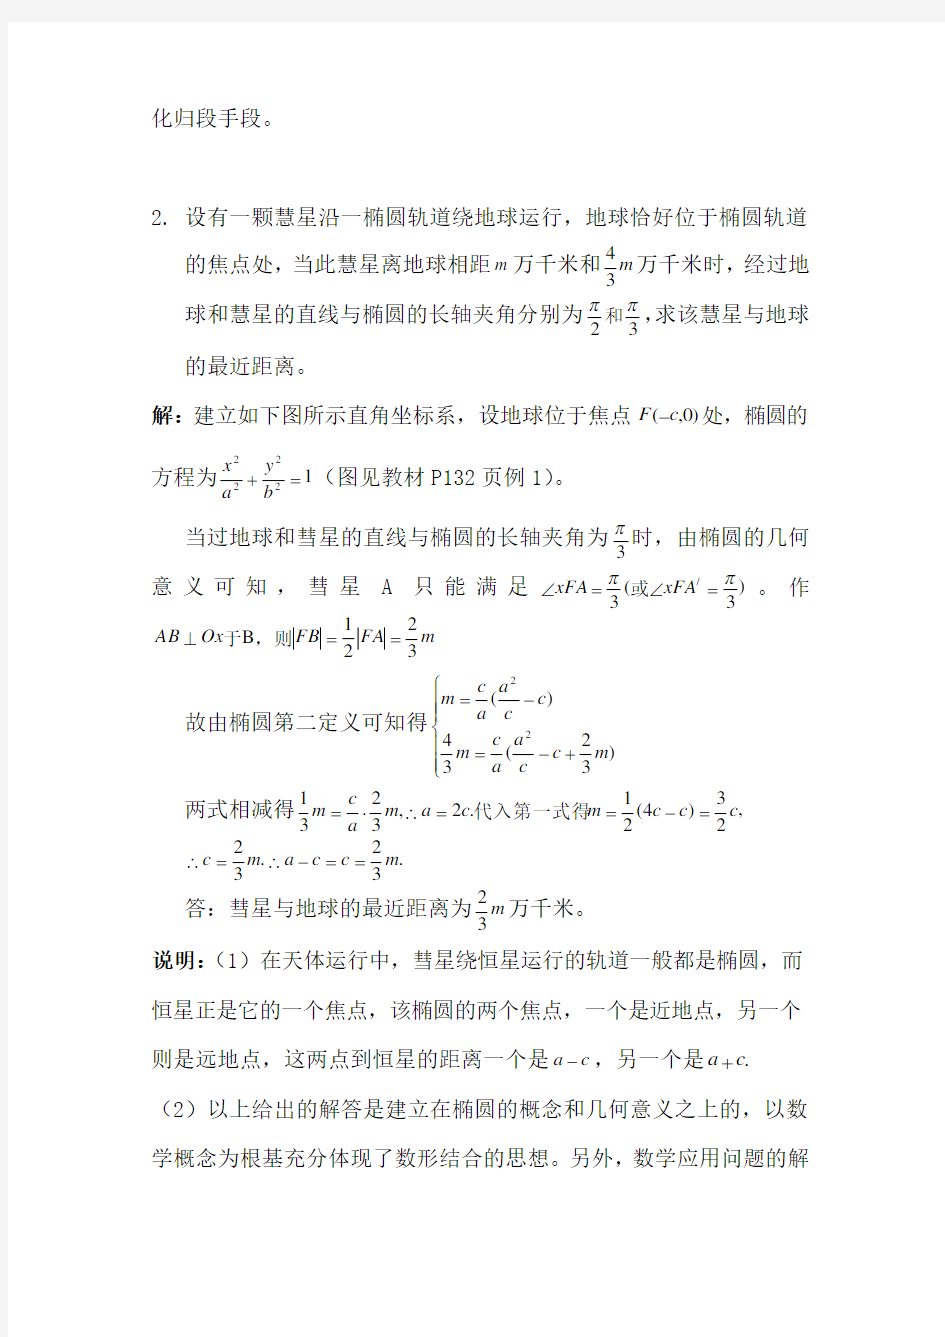 高中数学经典题型50道(另附详细问题详解)